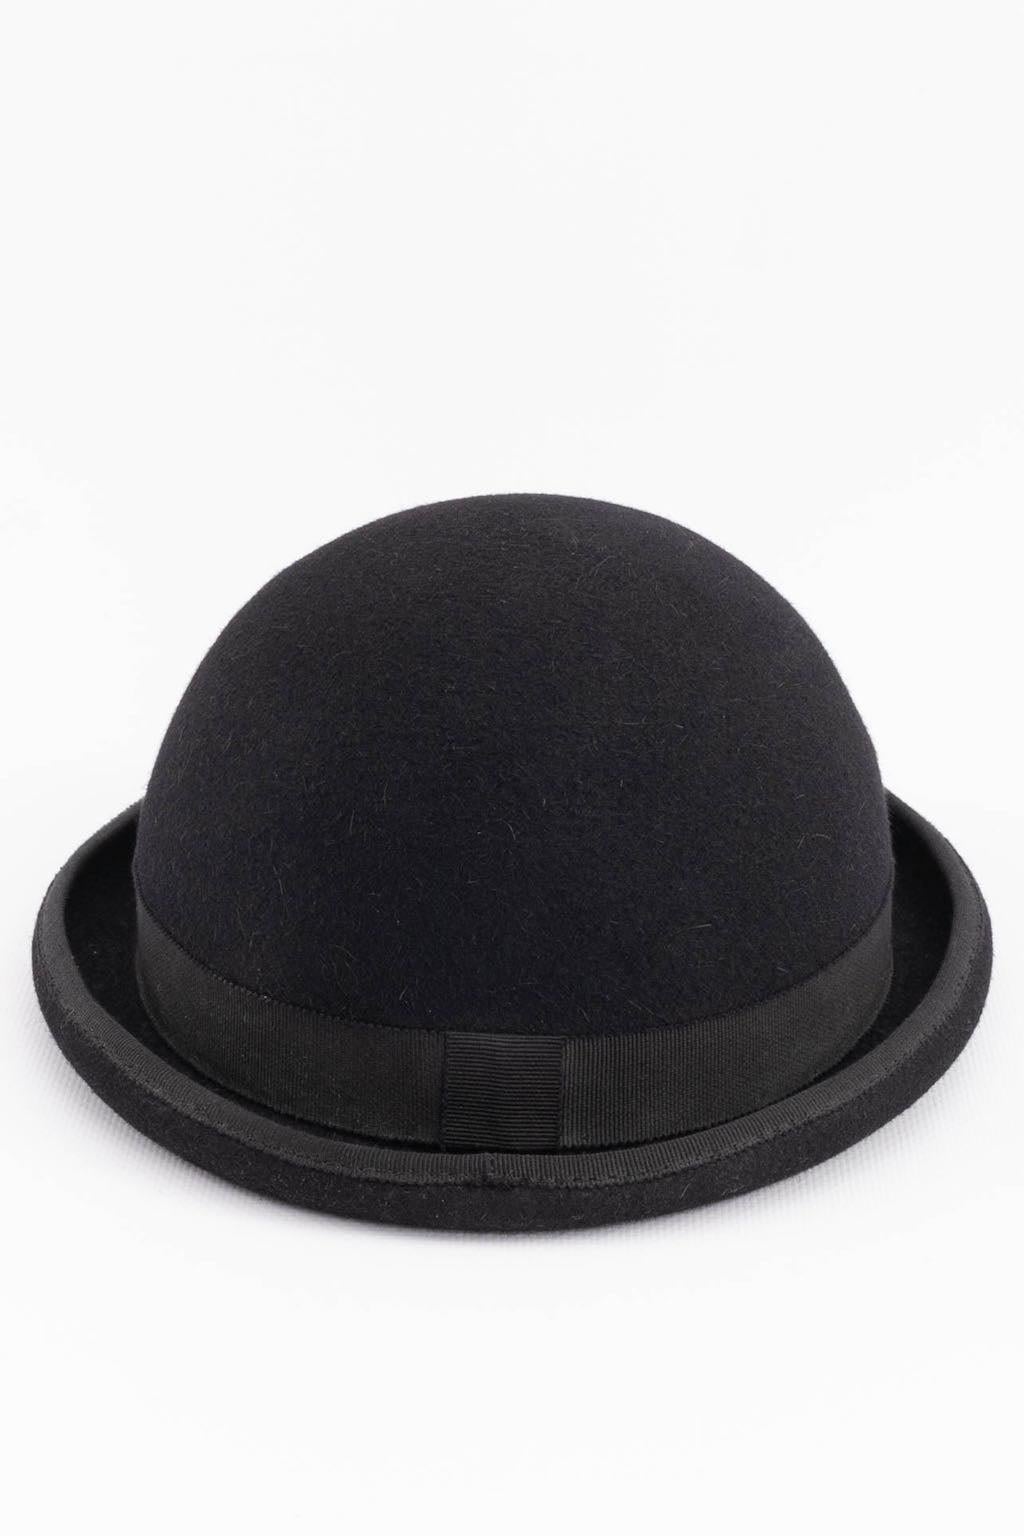 Maison Michel Black Felt Bowler Hat In Excellent Condition For Sale In SAINT-OUEN-SUR-SEINE, FR